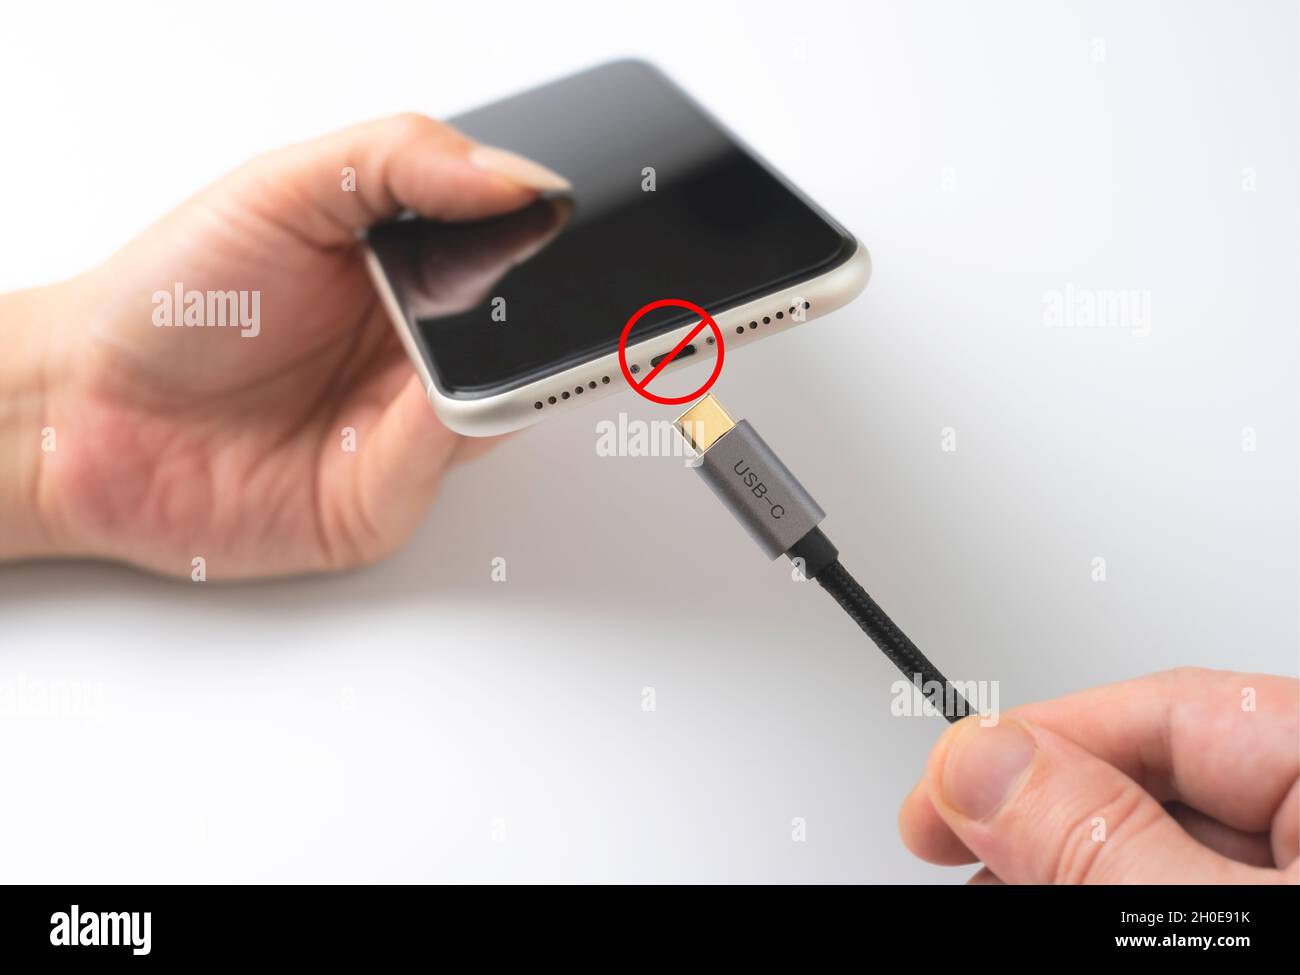 Die Europäische Union verbietet Blitzkabel. Hand versucht, Typ-c-Kabel an Smartphone anschließen. Stockfoto